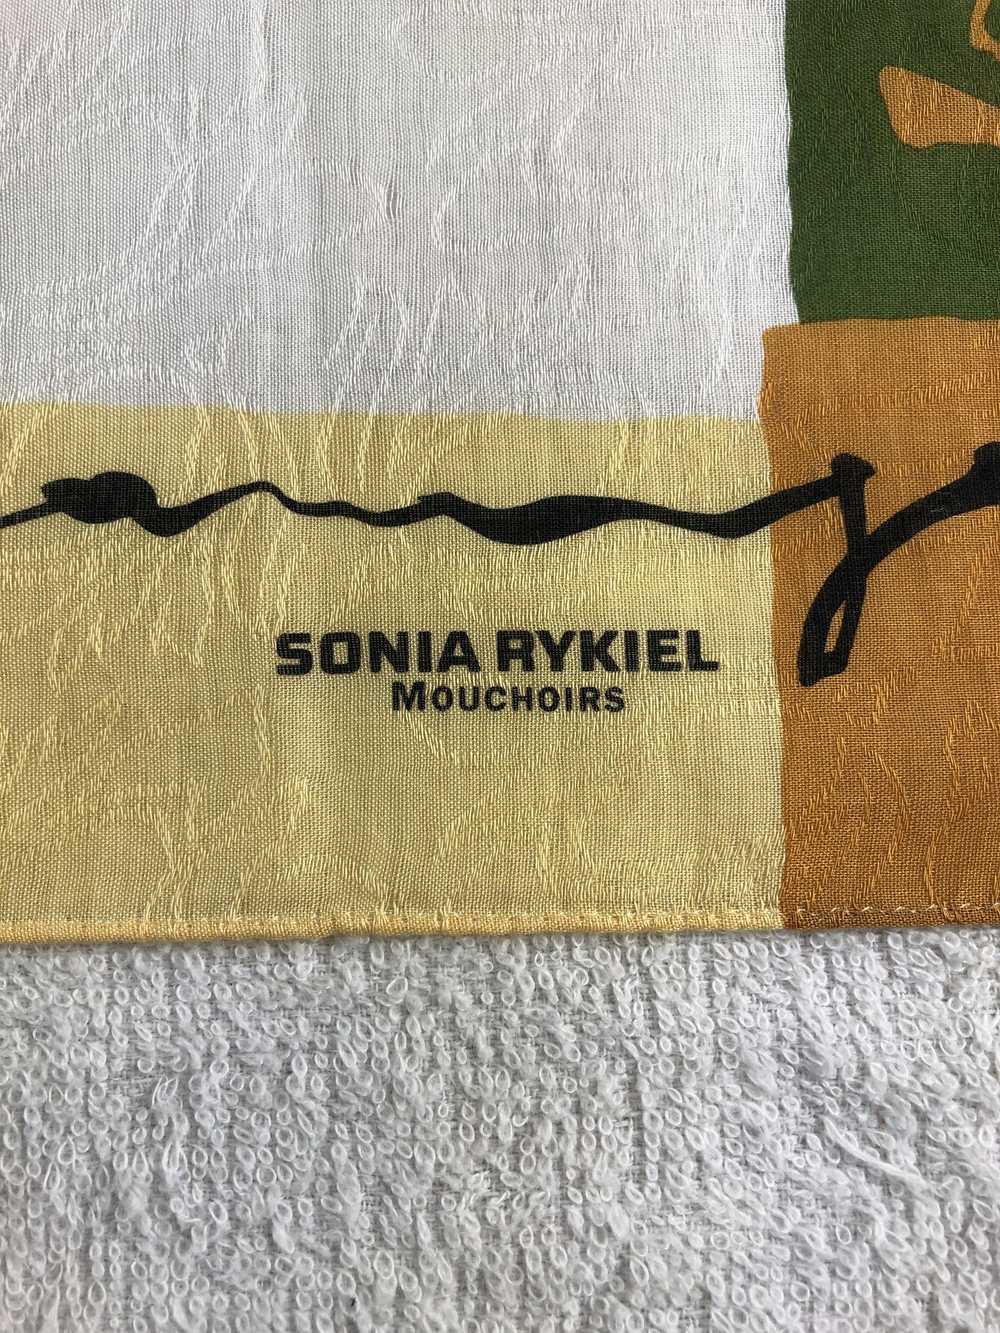 Sonia Rykiel Sonia Rykiel Handkerchief / Bandana … - image 5